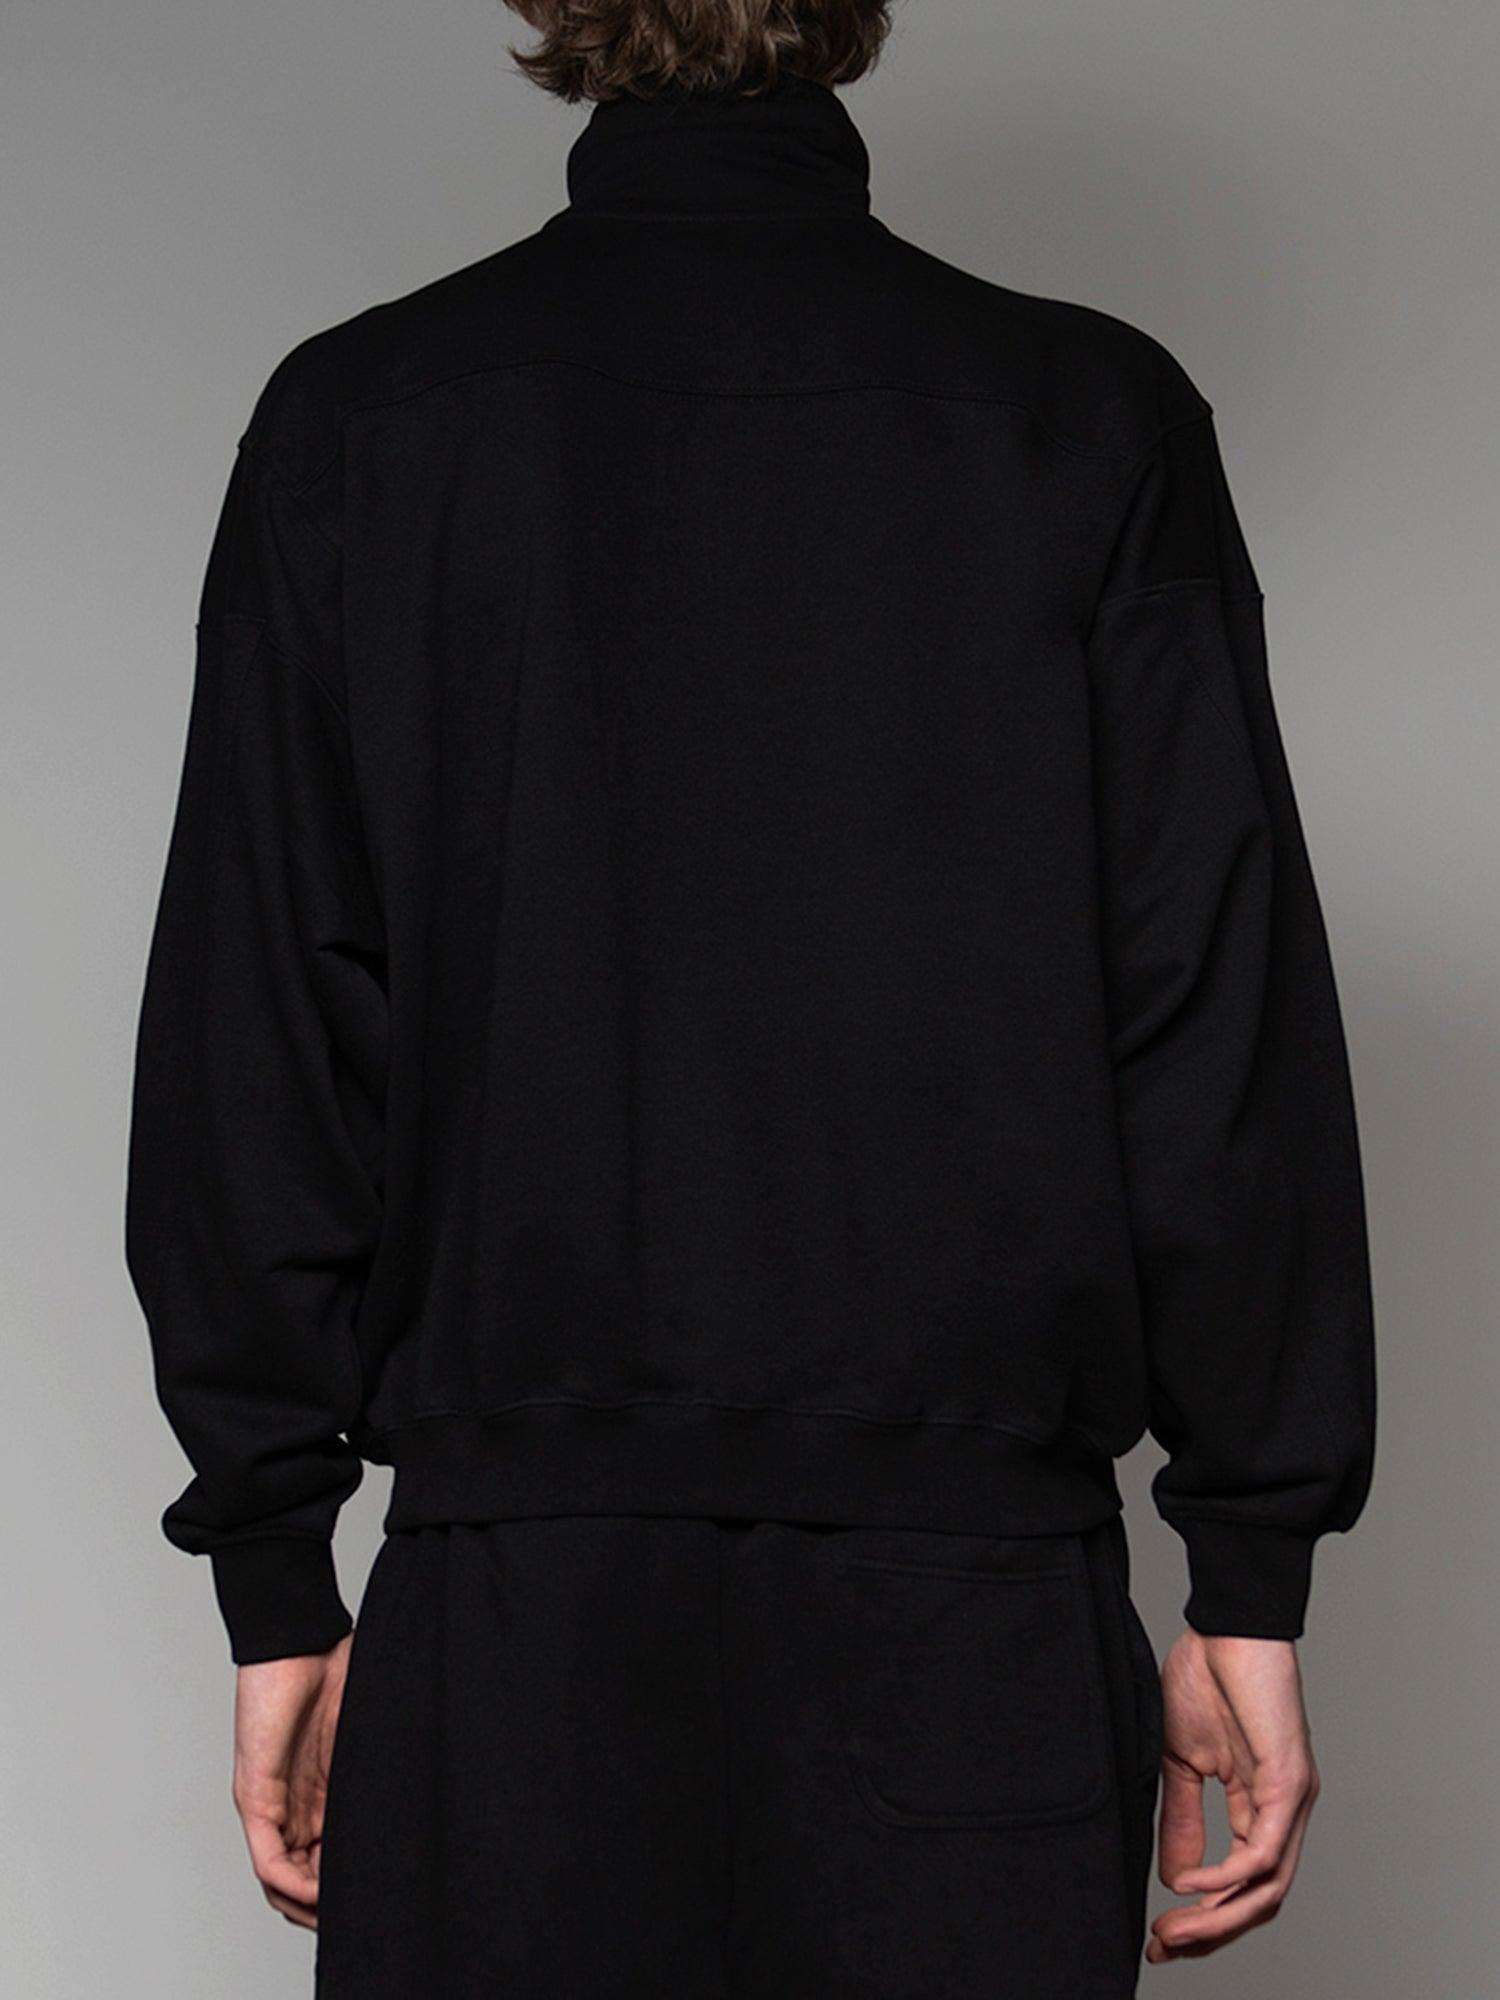 Black on Black Half Zip Sweatshirt - SOON TO BE ANNOUNCED